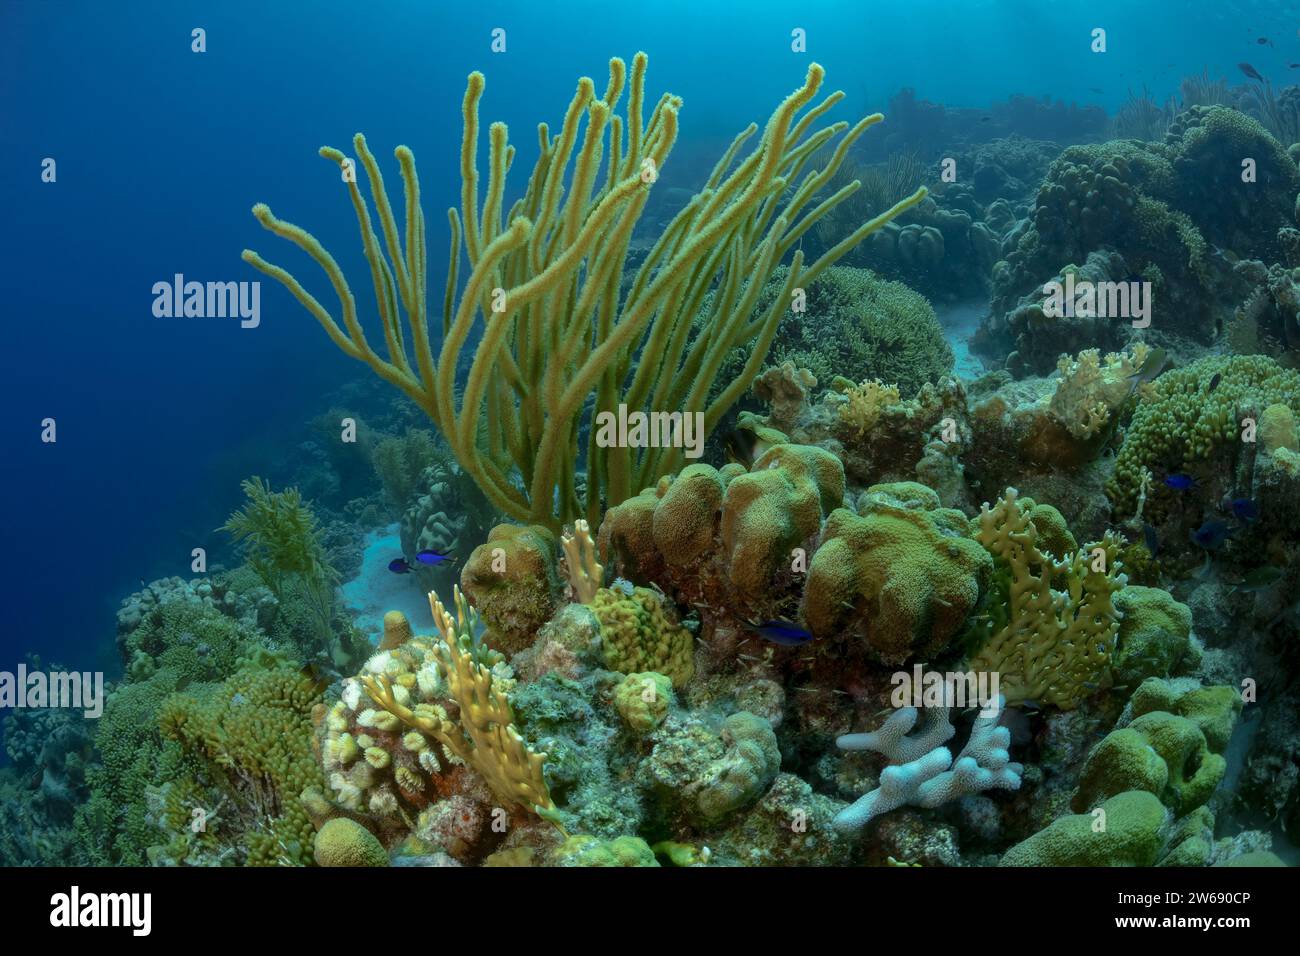 Un colorato e fiorente ecosistema sottomarino della barriera corallina, animato da diverse forme di vita marina e specie di corallo. Foto Stock